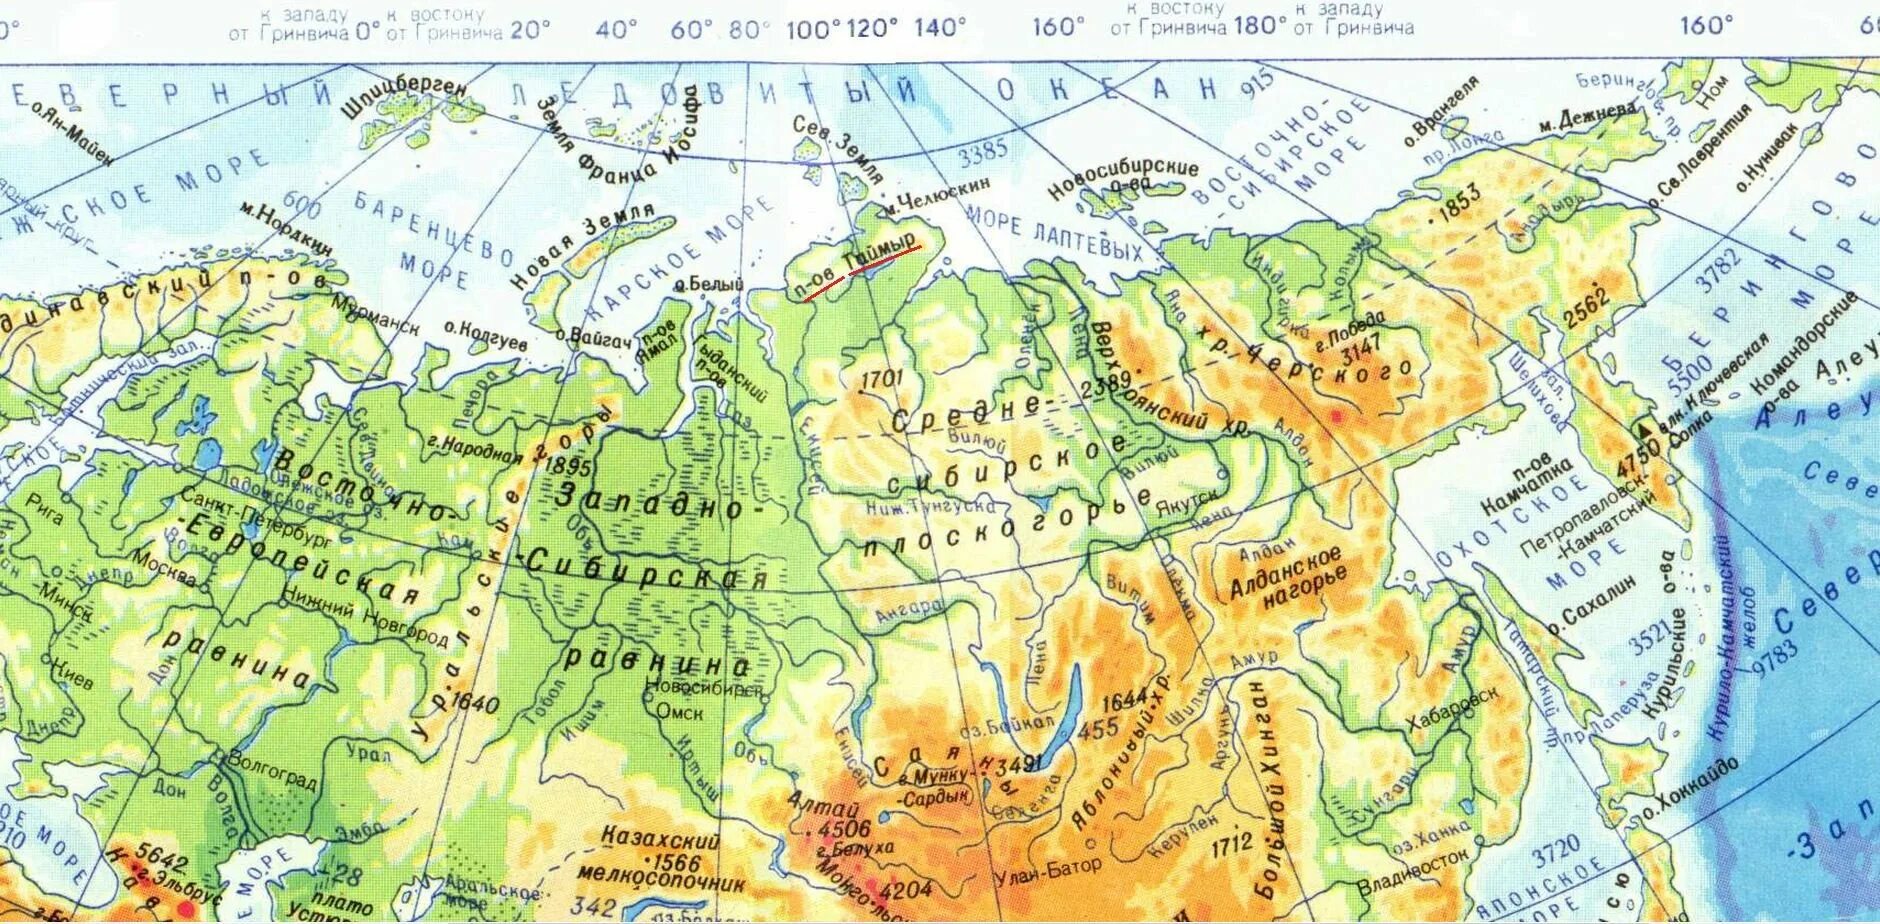 Таймыр на физической карте Евразии. Физическая карта Евразии равнины. Физическая карта Евразии равнины и горы и реки озера. Полуостров Таймыр на физической карте Евразии.